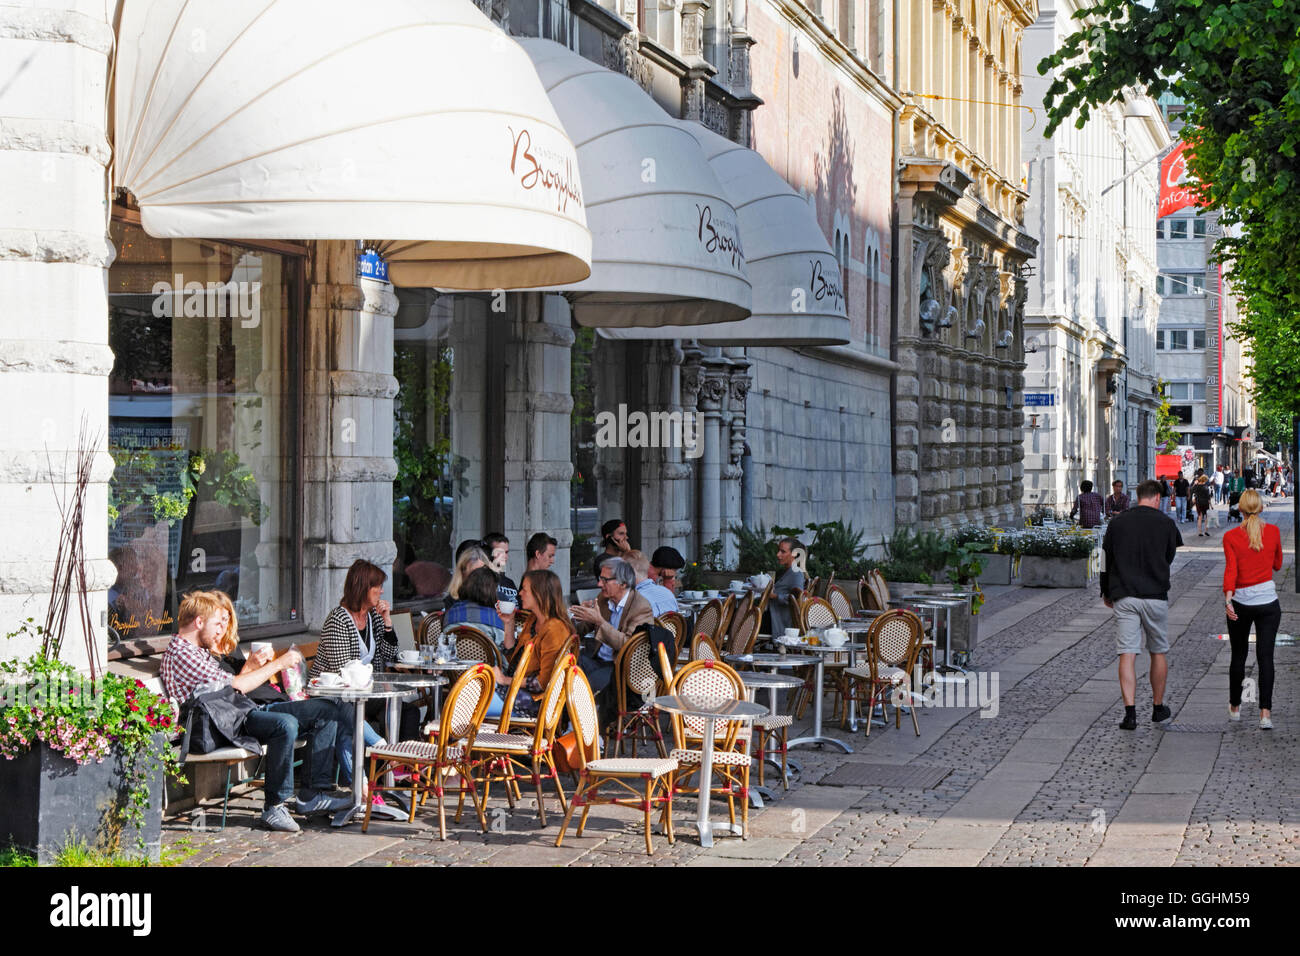 Pastelería y café, Vaestra Brogyllens Hammgatan, Gotemburgo, Suecia Foto de stock